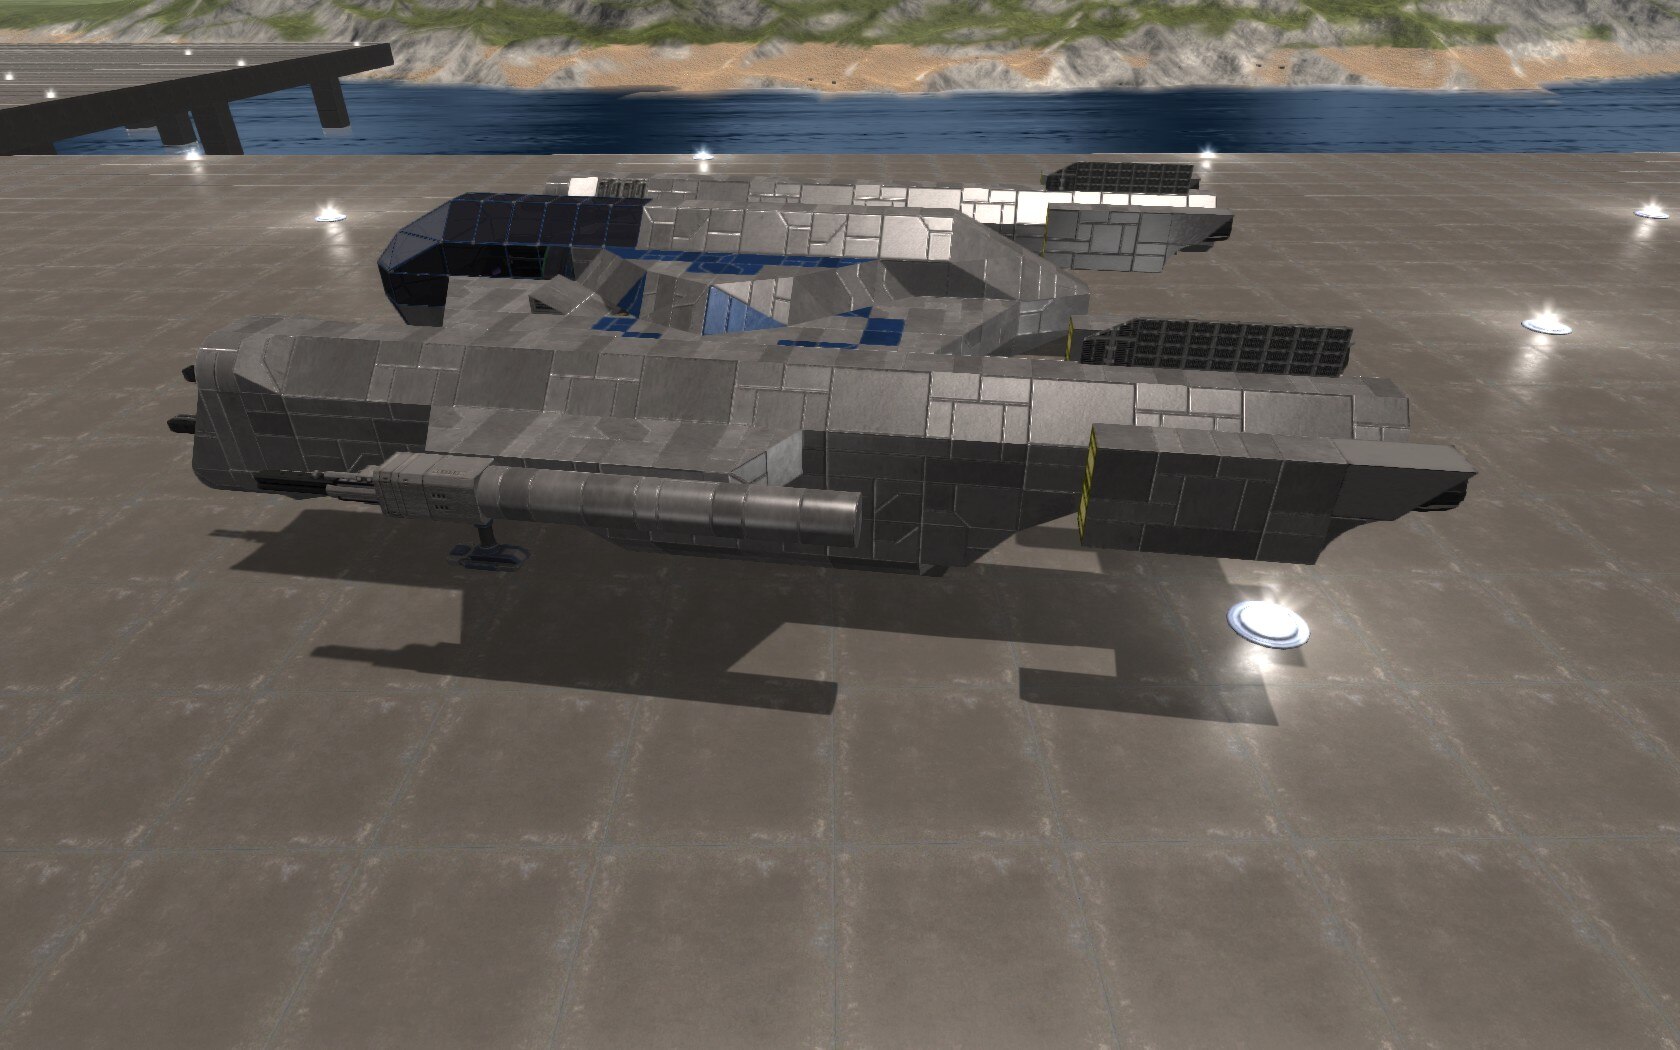 Ship #3238: Prydw MkII. Designer: Space Tank